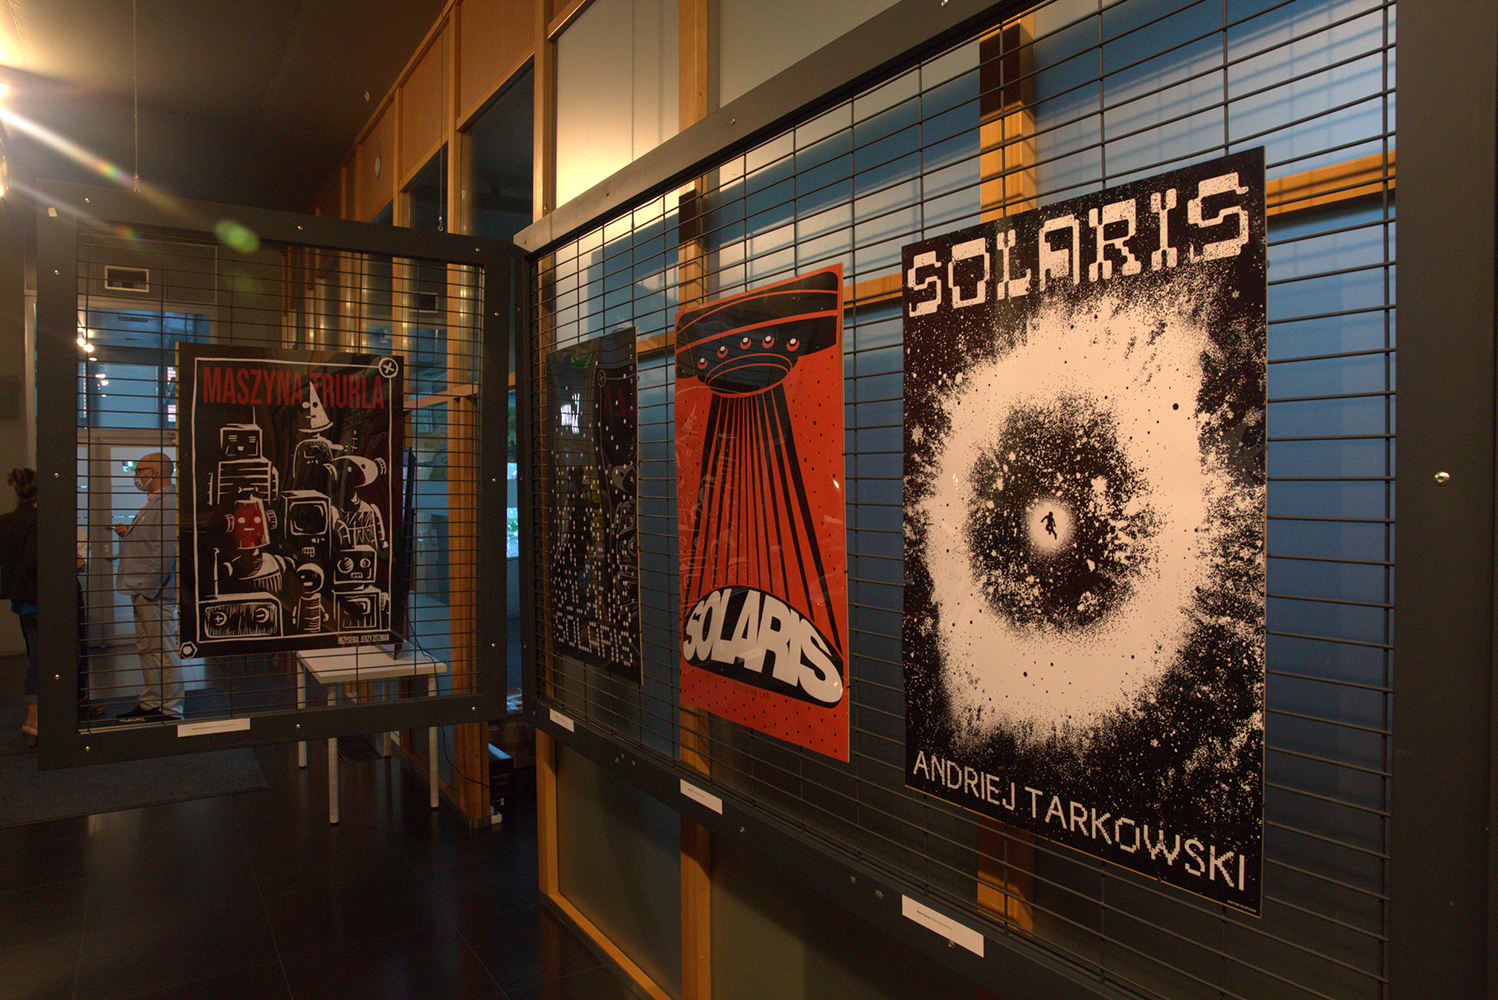 Kilka plakatów SOLARIS ujęto z głębi wnętrza galerii. Pomarańczowa ściana doświetlana dziennym światłem, teraz pod wpływem panującego na zewnątrz mroku jest granatowa